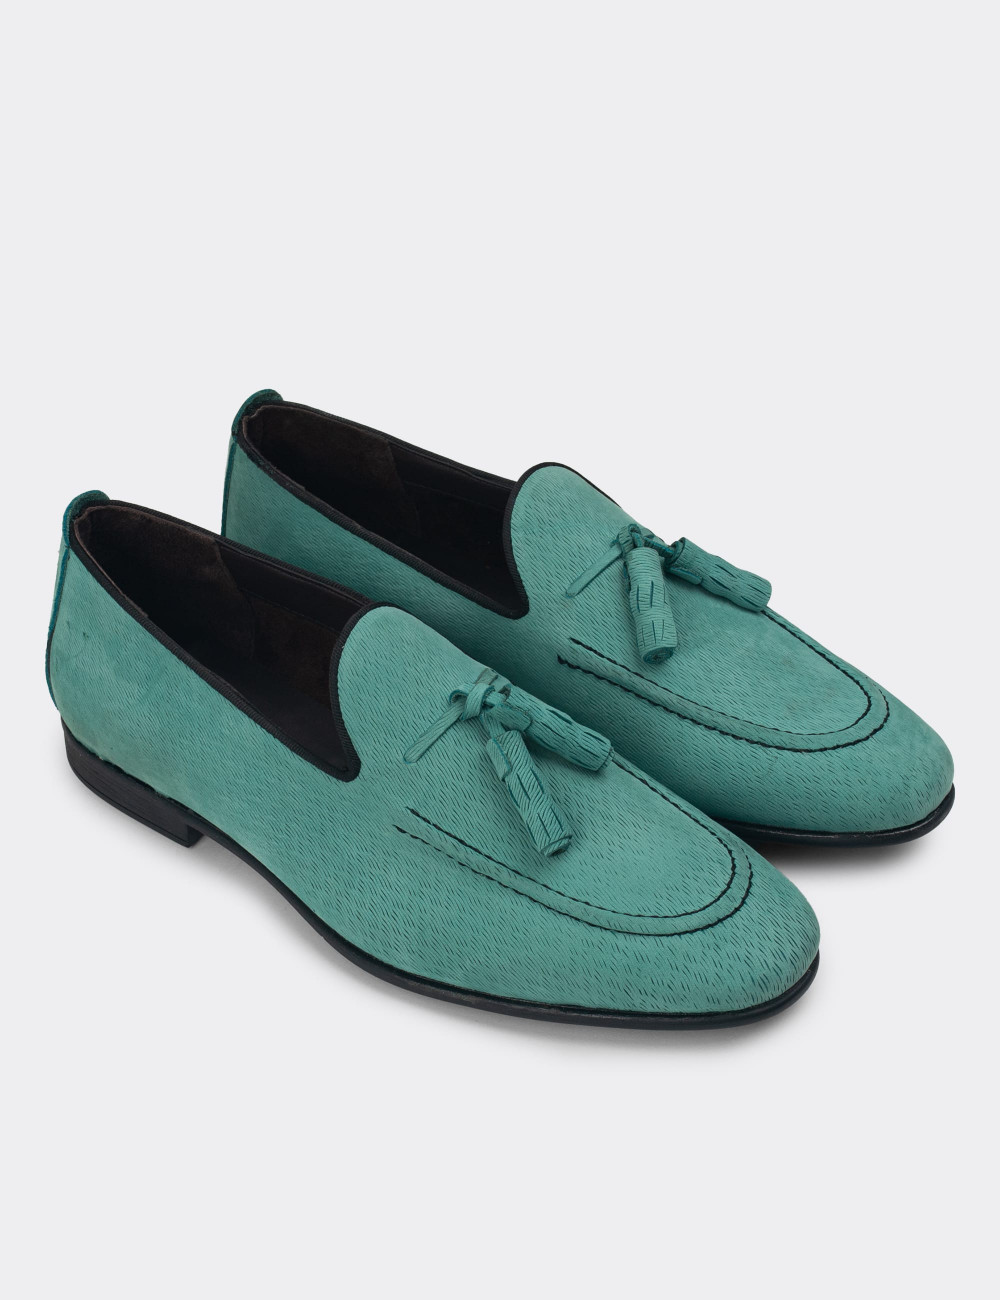 Hakiki Nubuk Yeşil Erkek Loafer Ayakkabı - 01701MYSLC01